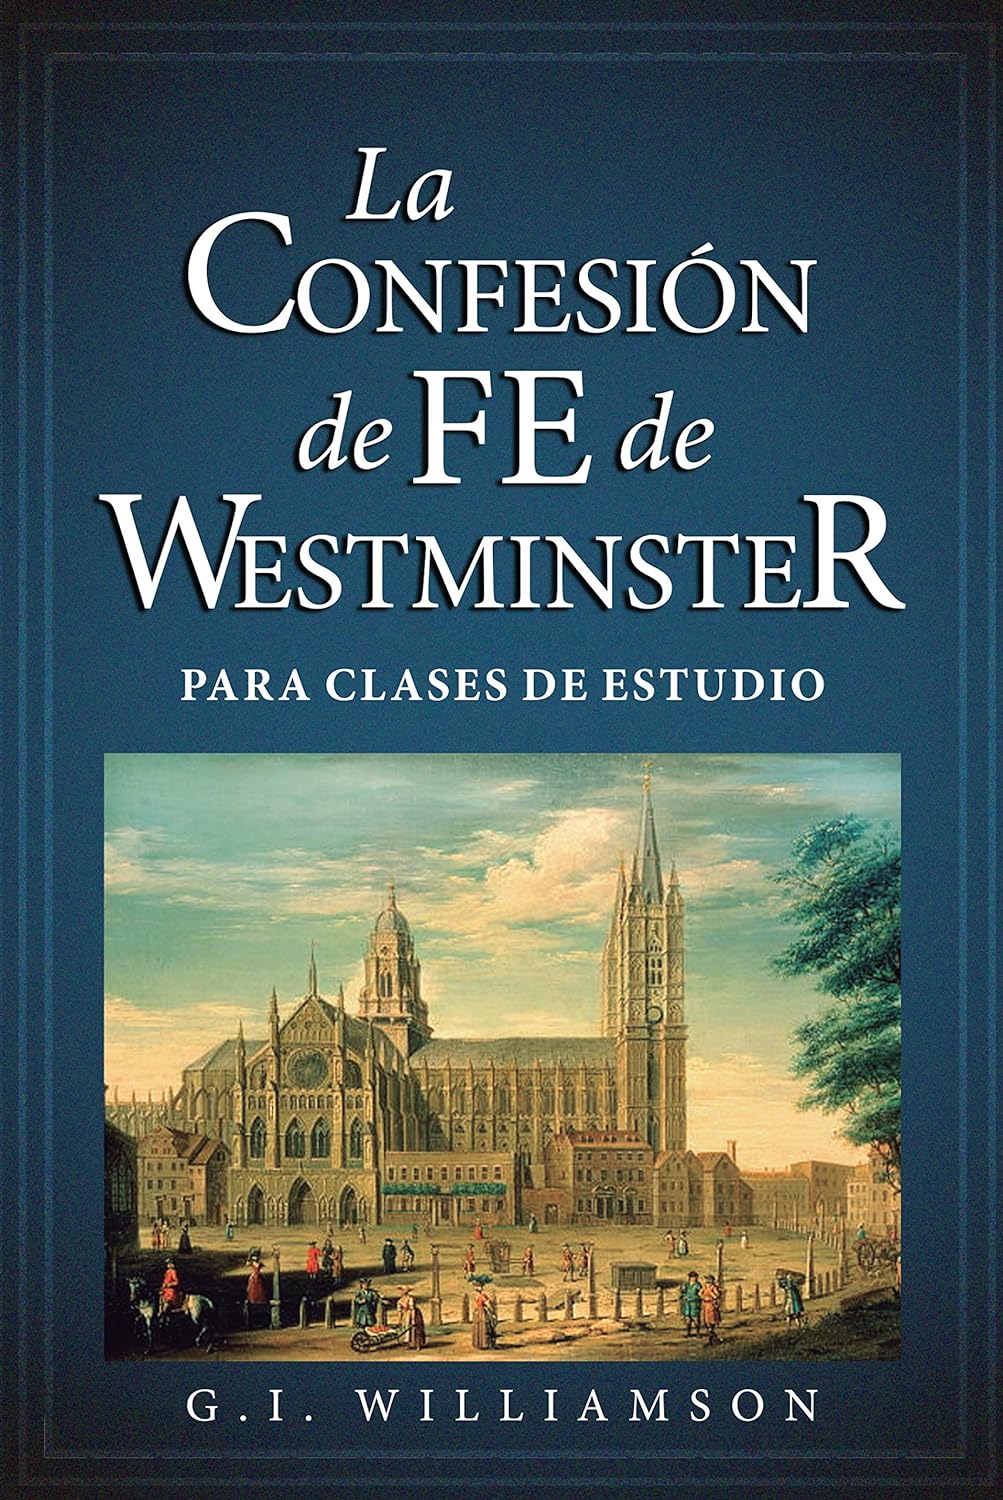 Confesion de fe de westminster nueva edicion